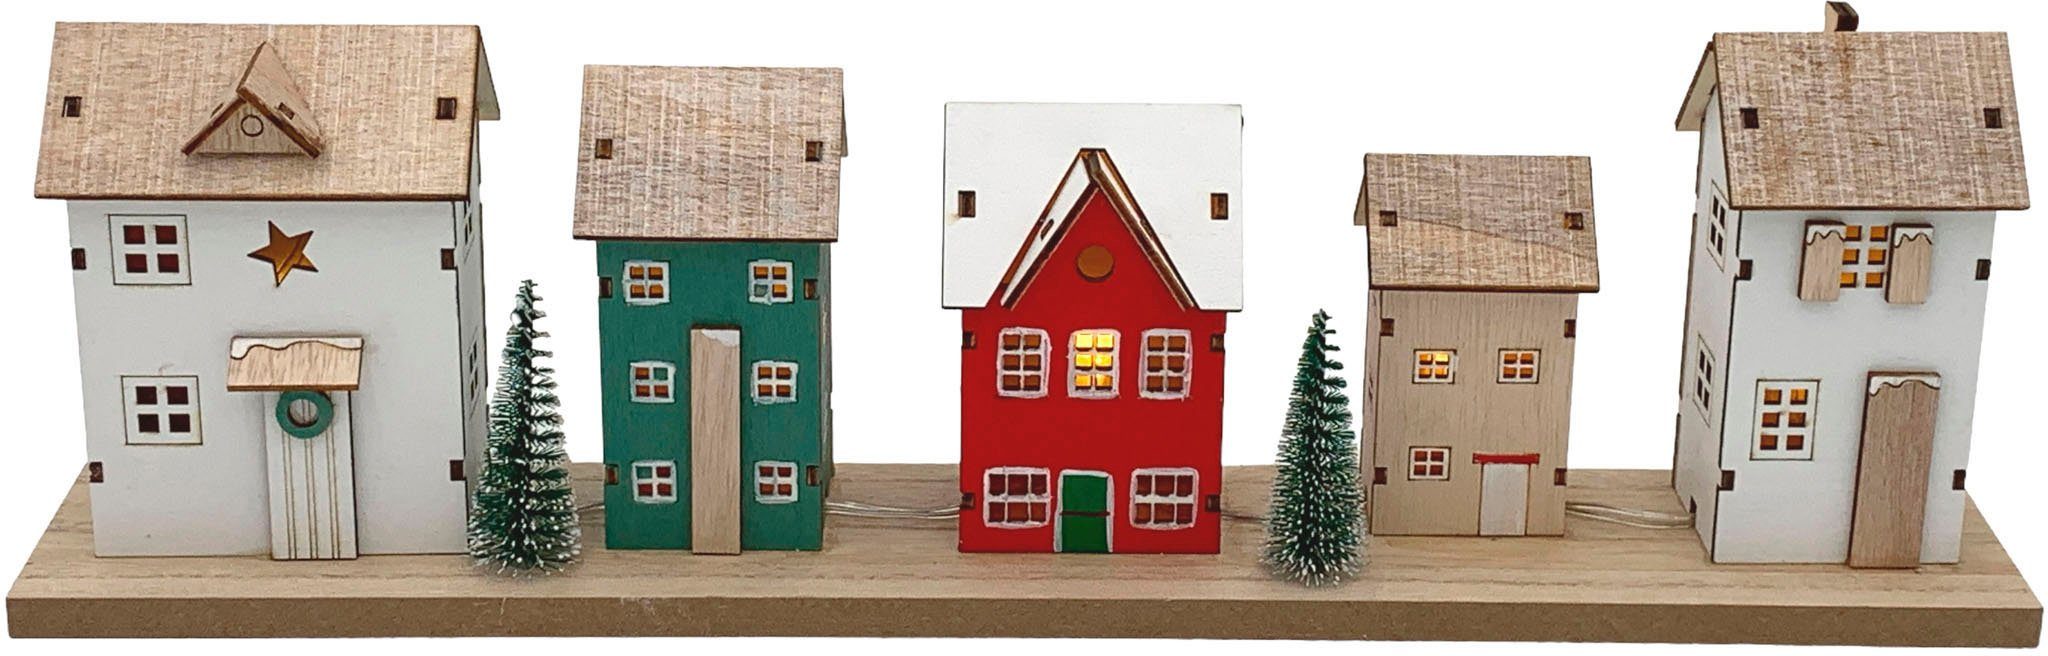 Home affaire Weihnachtshaus LED Häuschen Dietach, Höhe ca. 16,5 cm,  beleuchtete Weihnachtdeko aus Holz, Batteriebetrieb